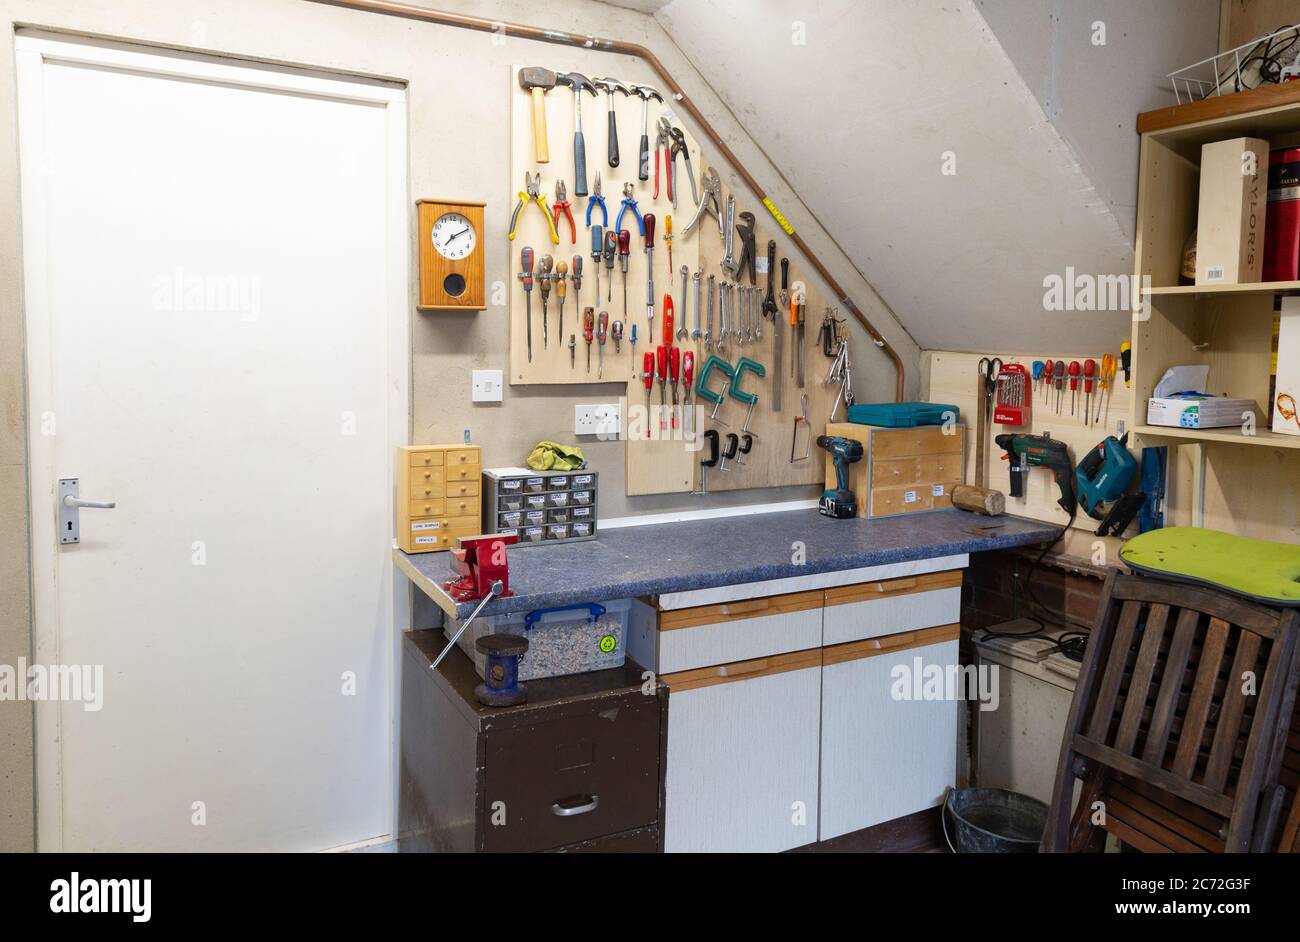 Atelier de bricolage et outils d'intérieur construits dans un garage domestique pendant le verrouillage - exemple d'activités de verrouillage; Suffolk Angleterre Royaume-Uni Banque D'Images